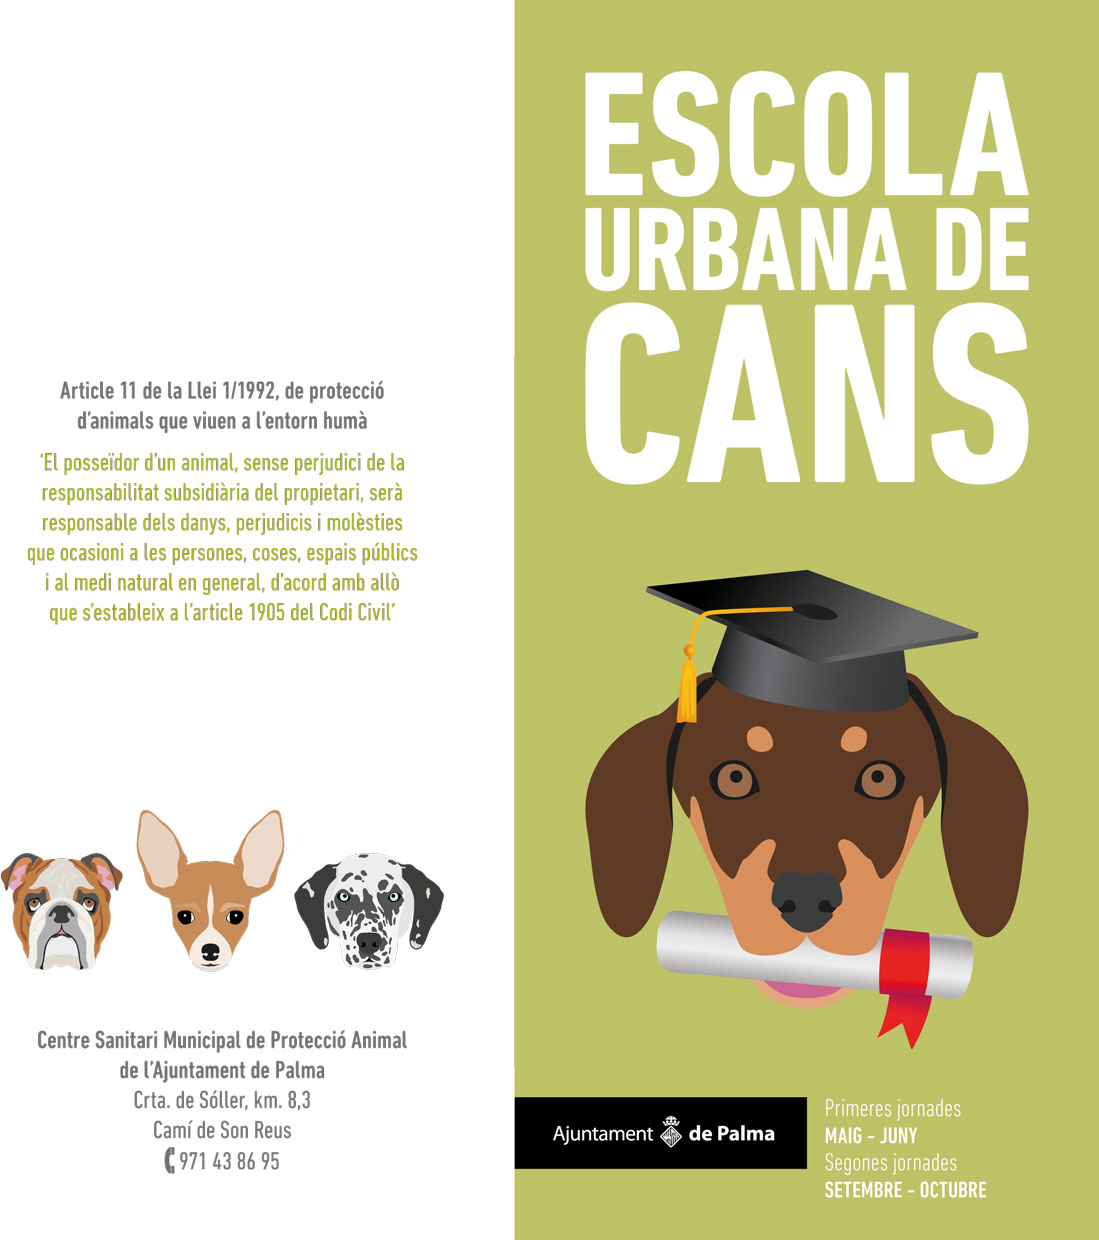 Escola urbana de cans 2016 - Imatge